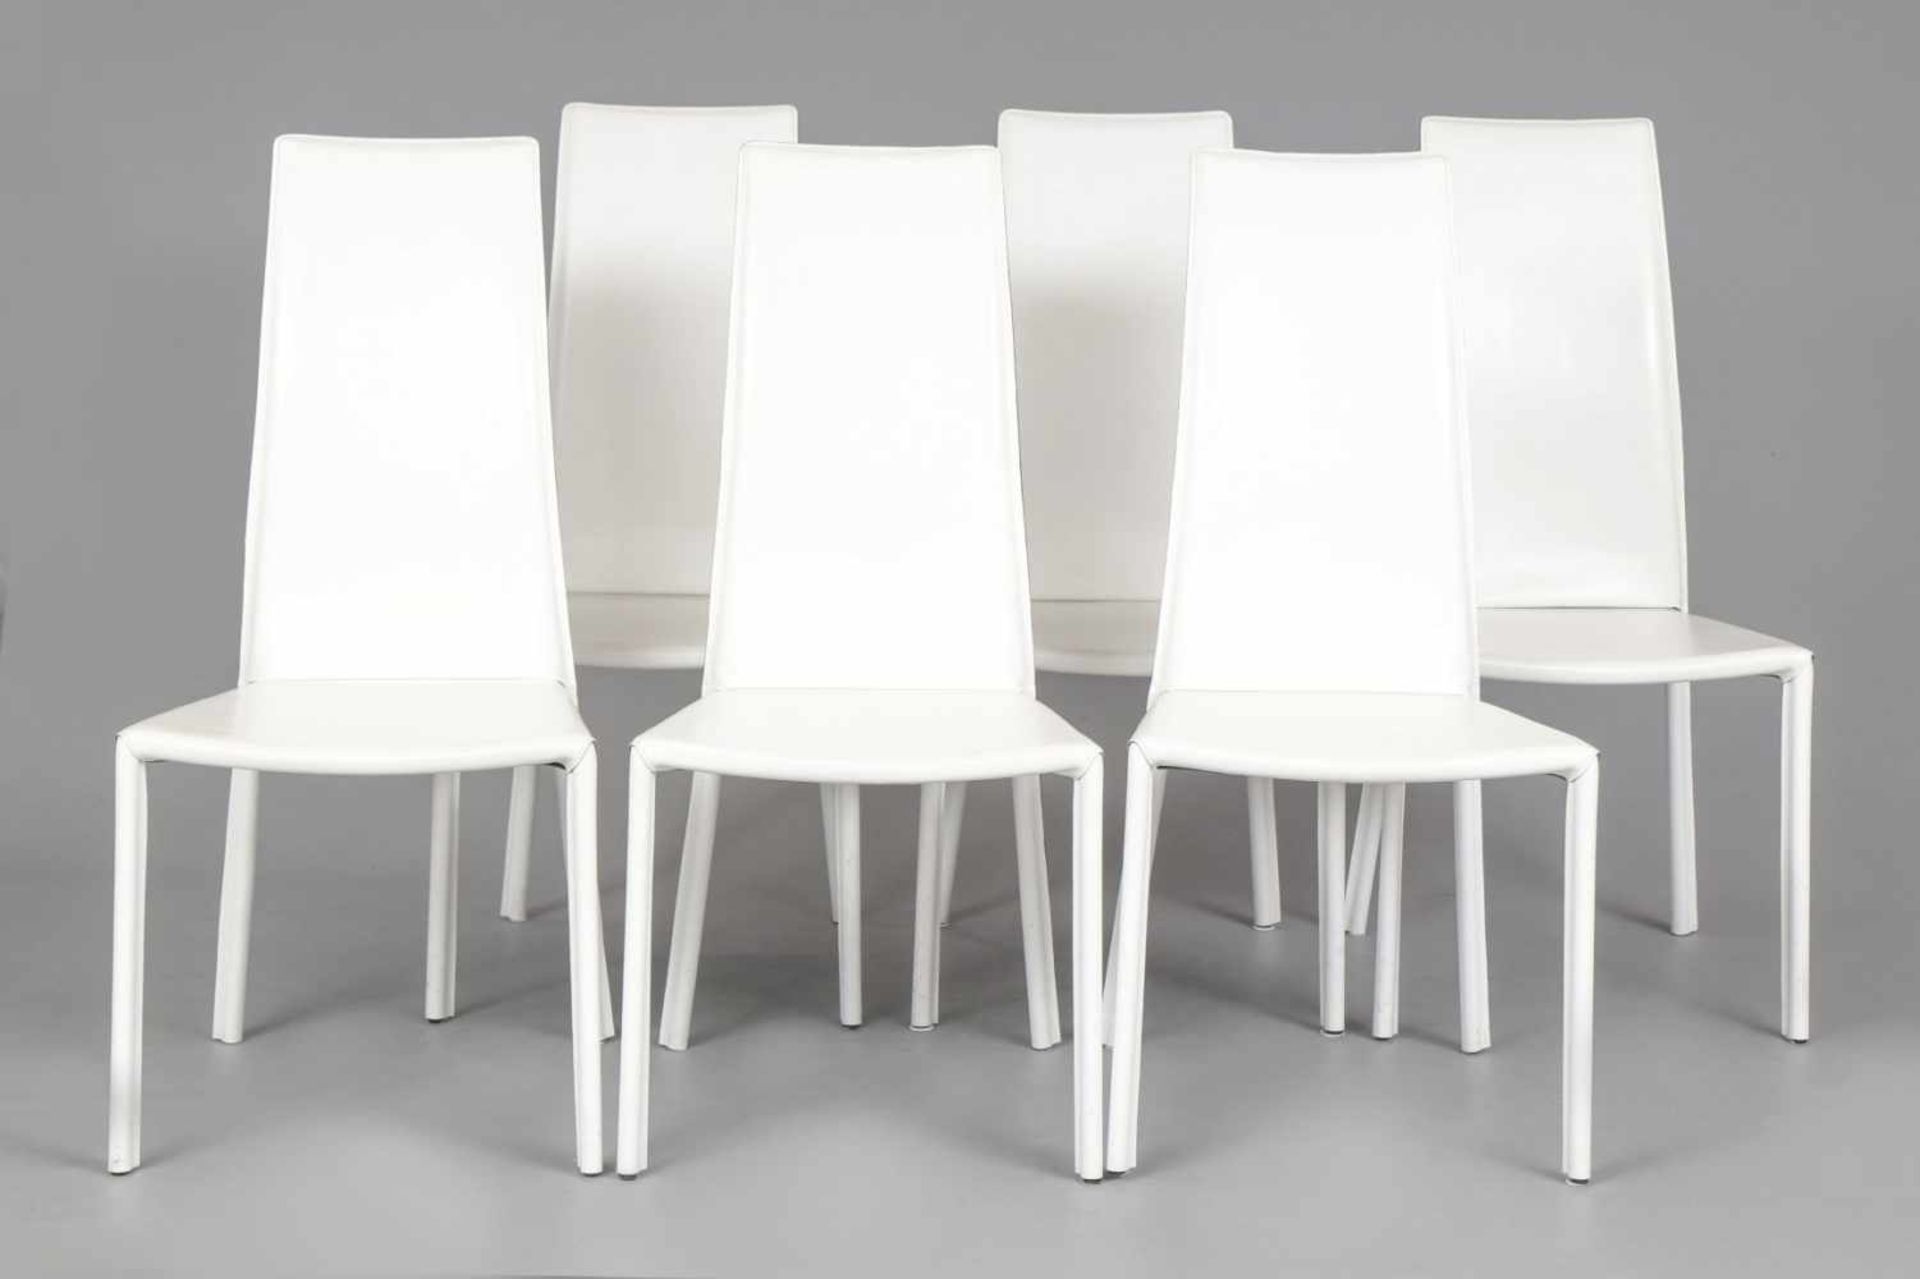 6 TRABALDO ITALIA Stühle weiß beledert, Hochlehner, eckige Sitzfläche, H 105cm, B 50cm, T 40cm, nur